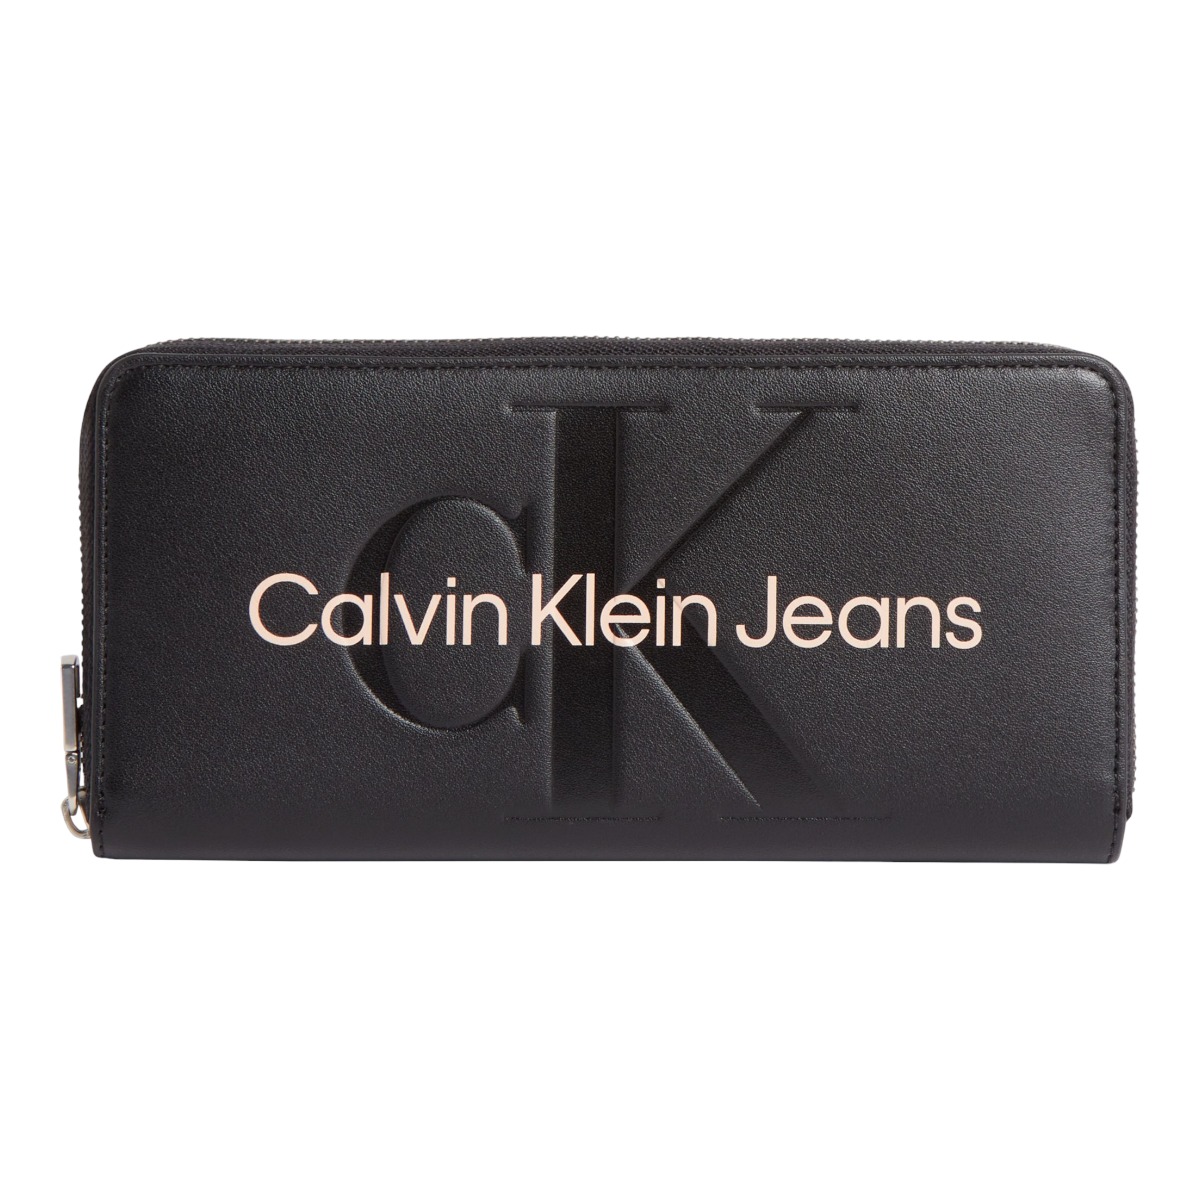 Levně Calvin Klein Jeans Woman's Wallet 8720108589673